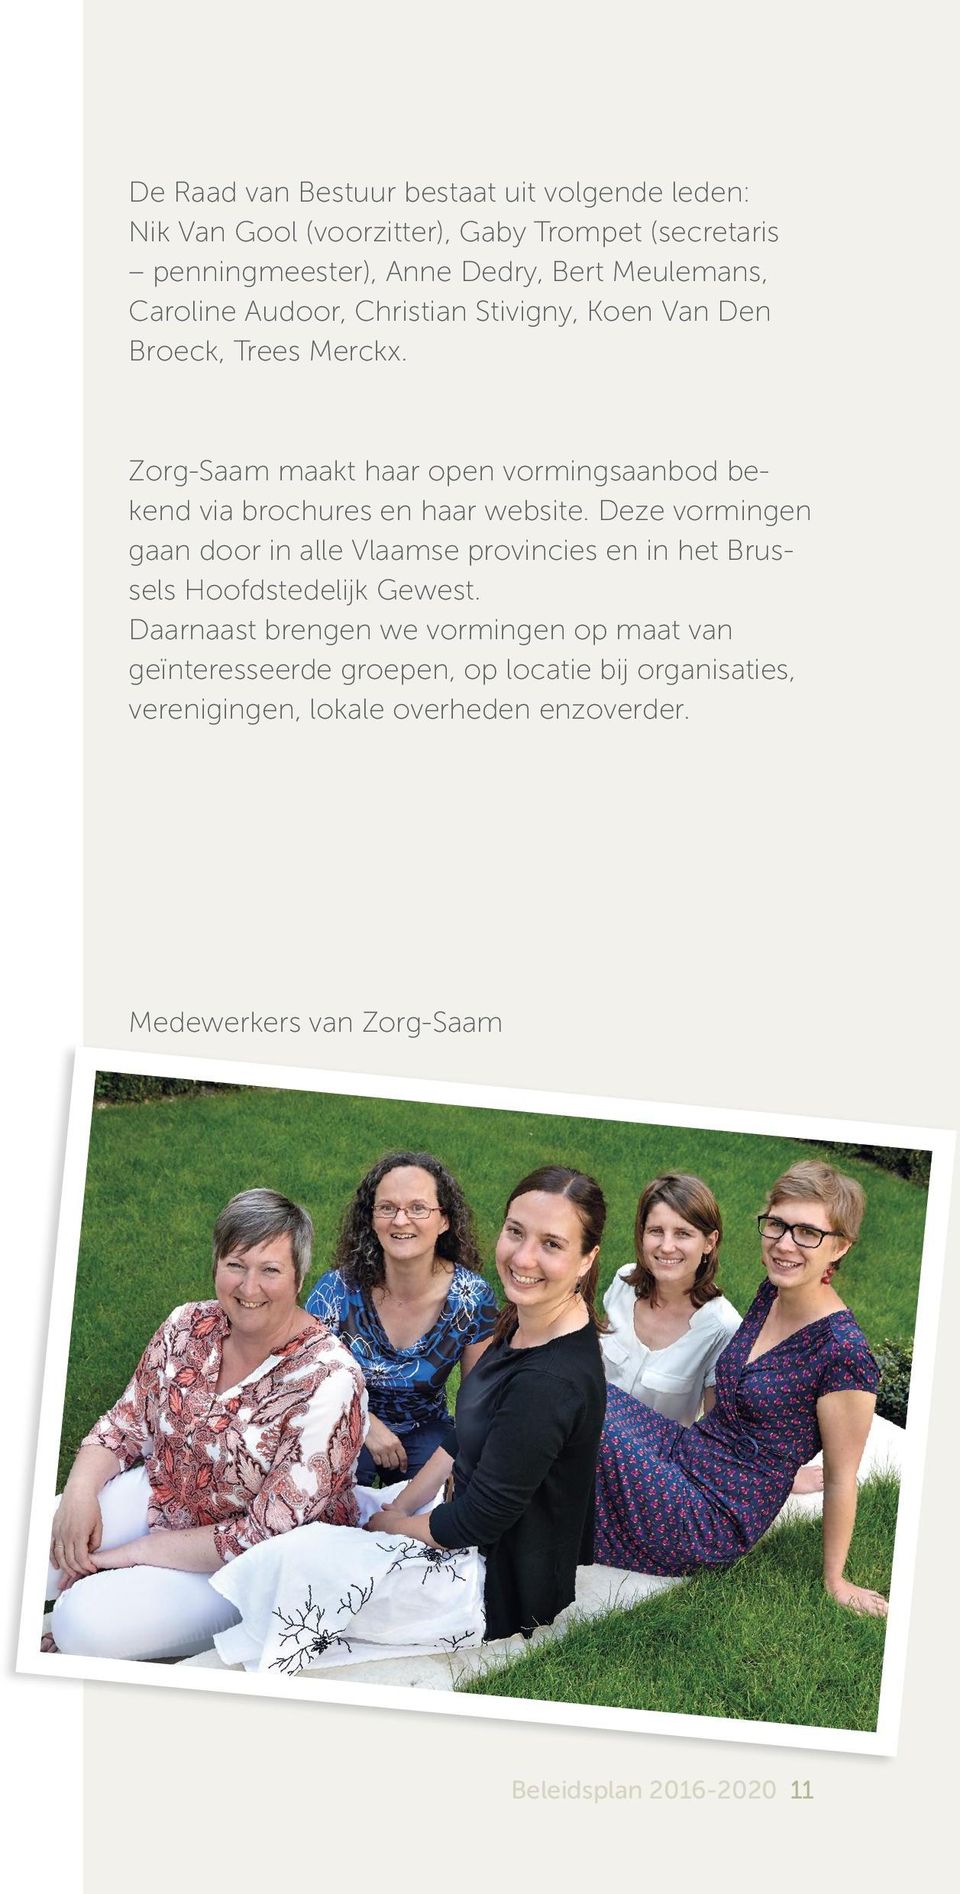 Zorg-Saam maakt haar open vormingsaanbod bekend via brochures en haar website.